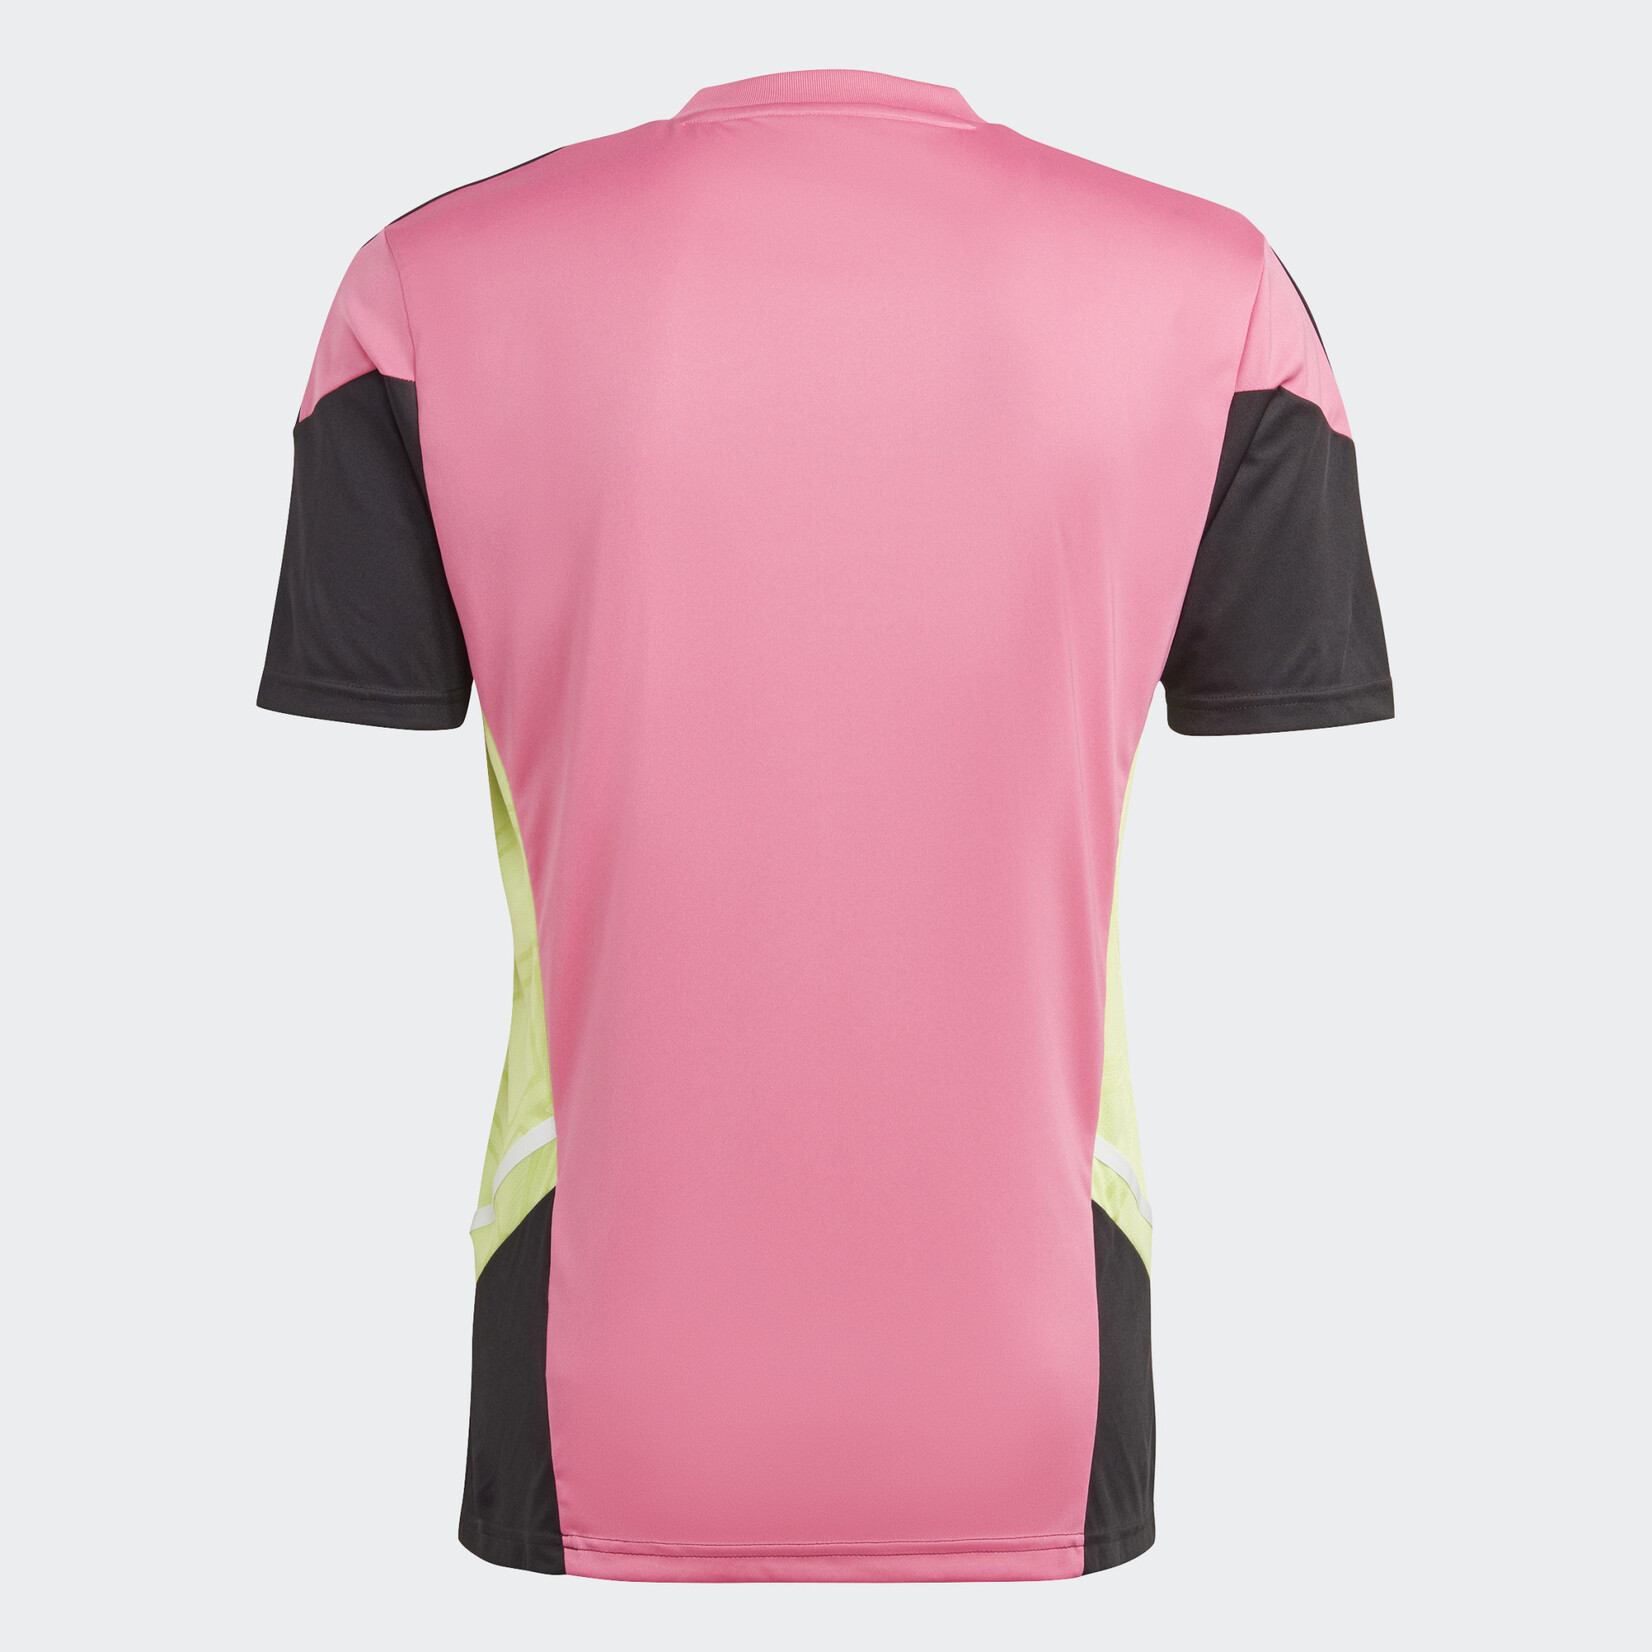 Adidas Juventus Condivo Training Jersey Pink